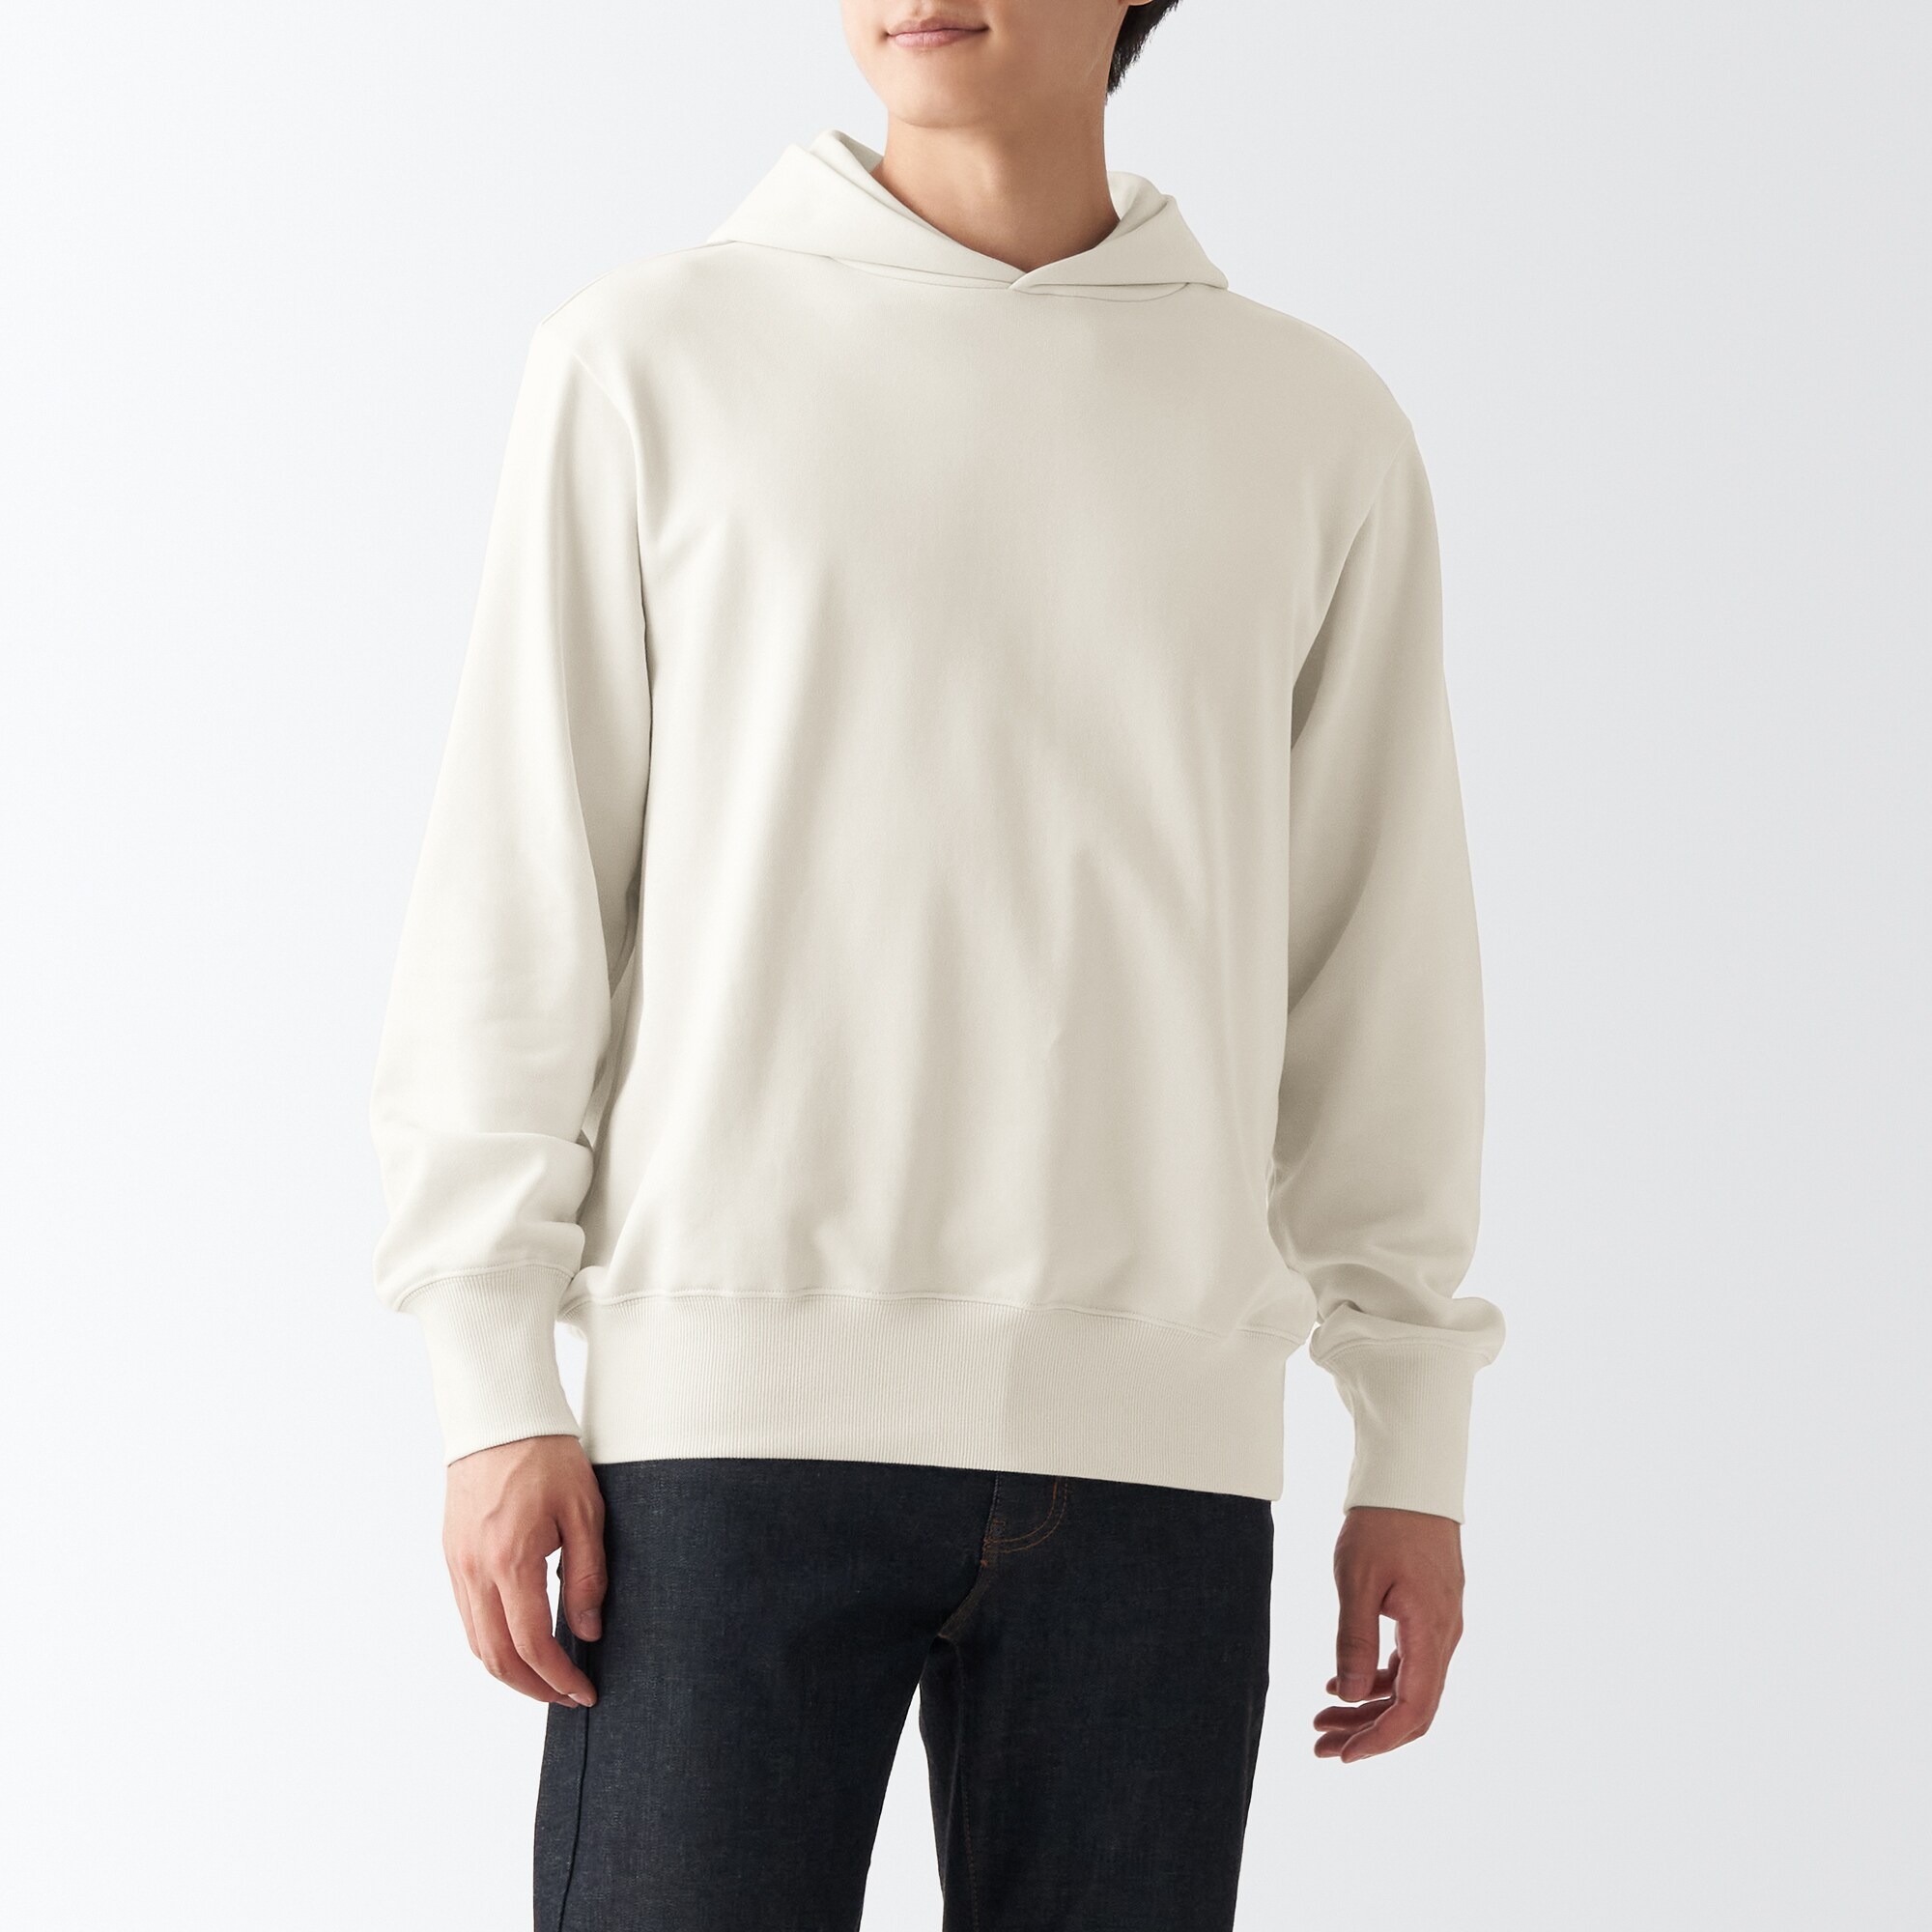 무인양품 일본 남성 후드 스웨트 셔츠 풀오버